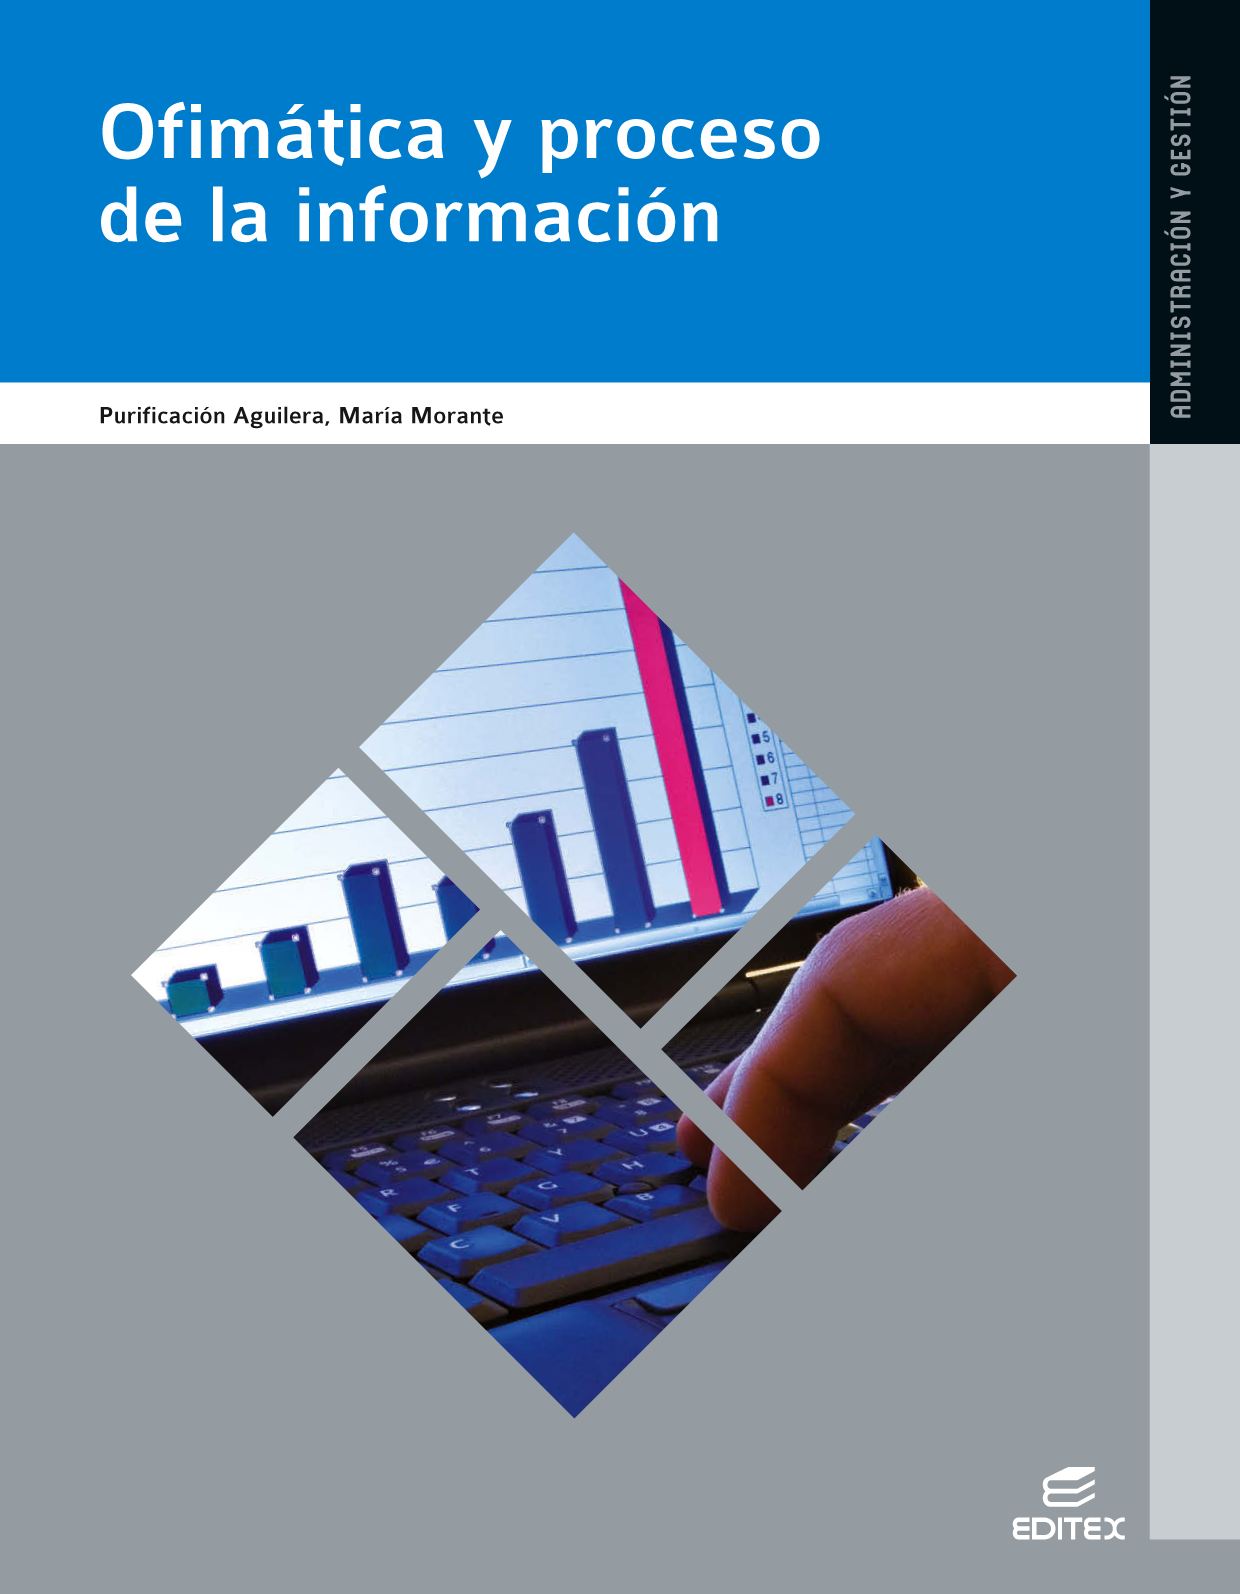 Ofimática y proceso de la información | Digital book | BlinkLearning